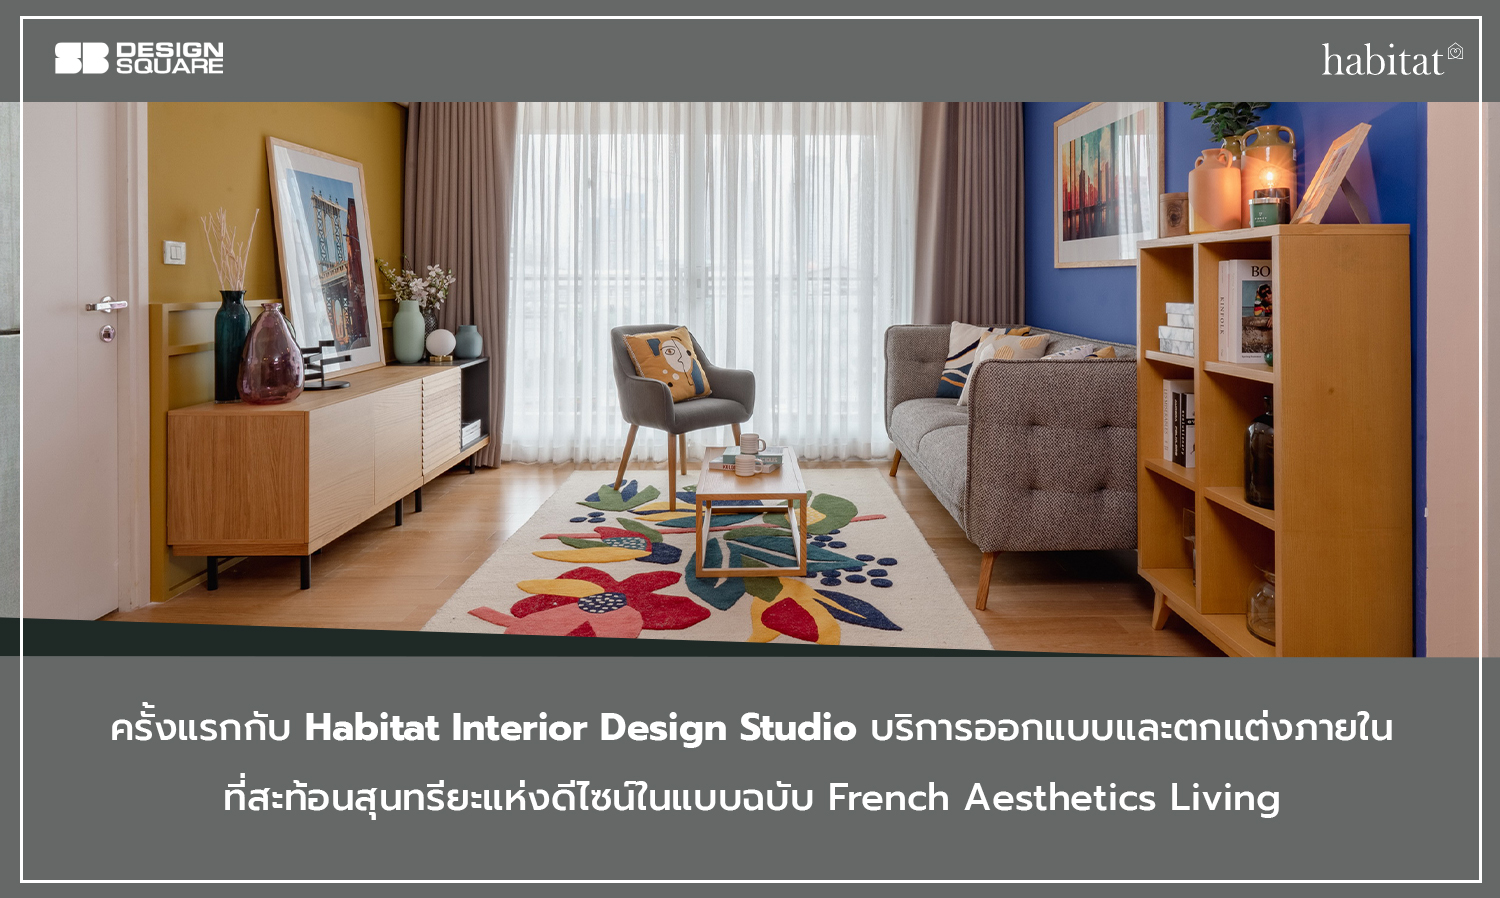 ครั้งแรกกับ Habitat Interior Design Studio บริการออกแบบและตกแต่งภายใน ที่สะท้อนสุนทรียะแห่งดีไซน์ในแบบฉบับ French Aesthetics Living